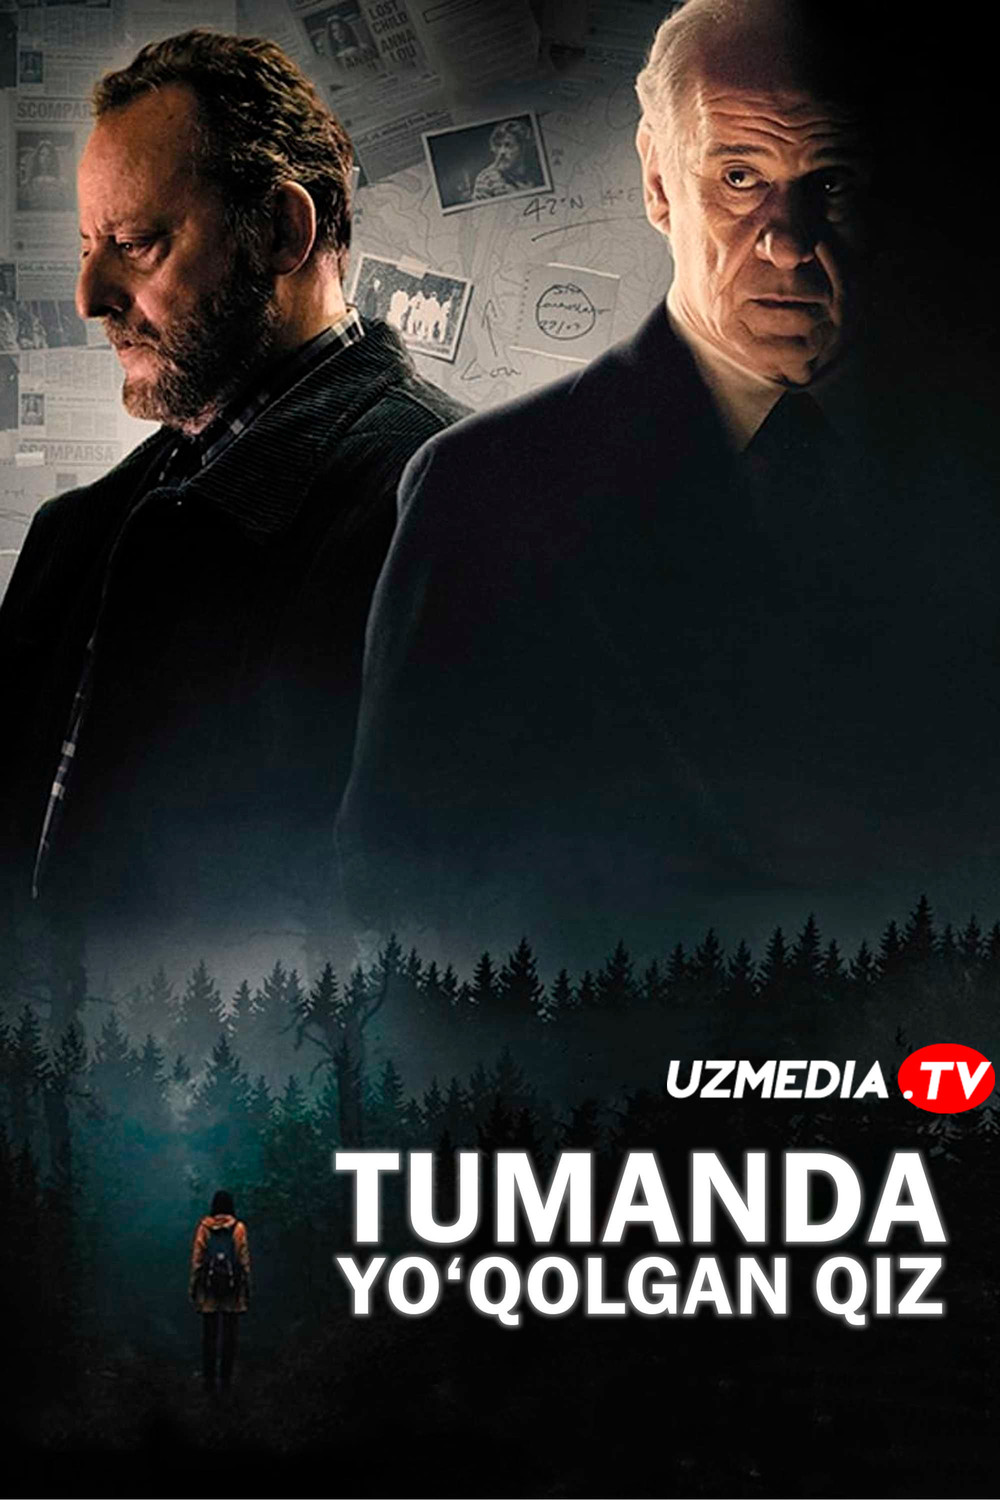 Tumanda yo'qolgan qiz / Tumandagi qiz Italiya filmi Uzbek tilida O'zbekcha tarjima kino 2017 Full HD tas-ix skachat